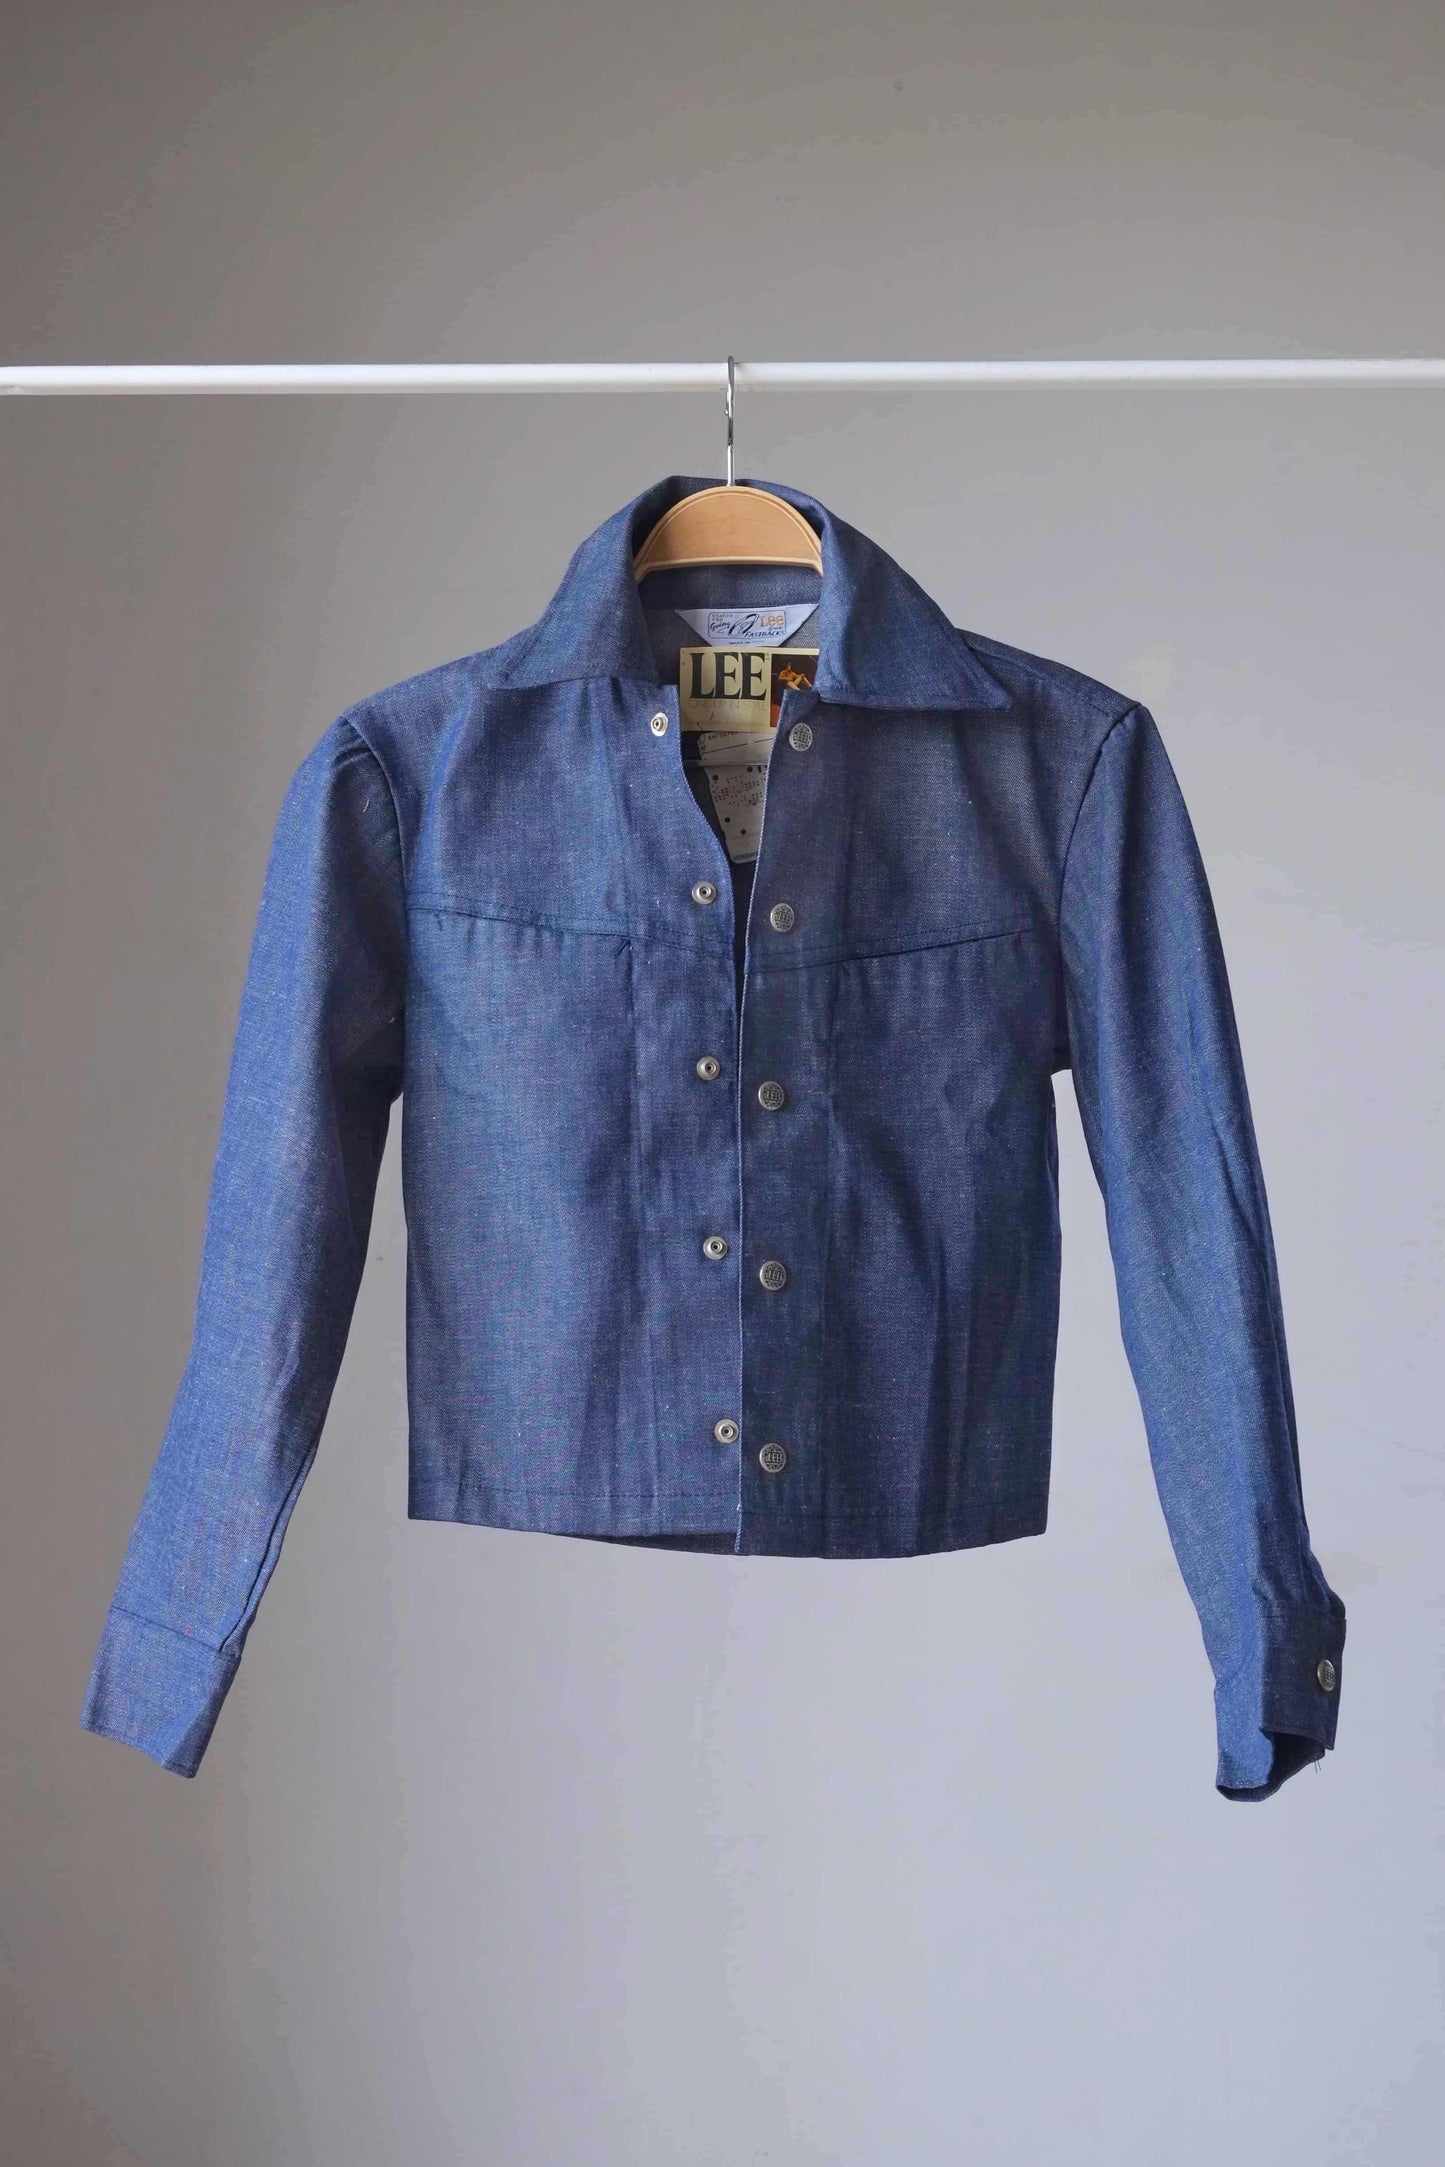 Vintage Lee Fastback 60's Denim Jacket